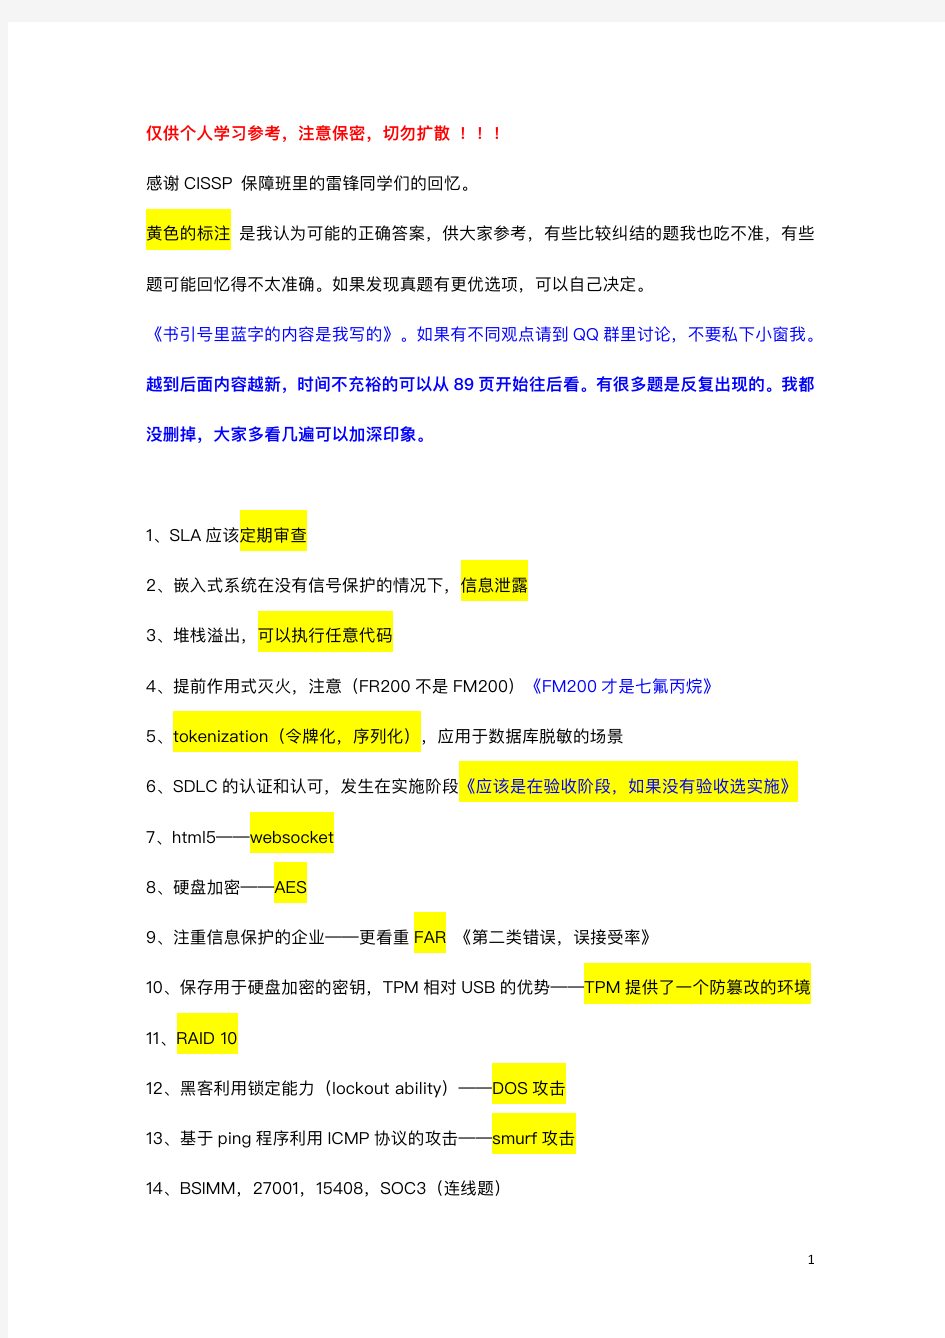 CISSP 考生中文真题回忆录(2018年12月版)